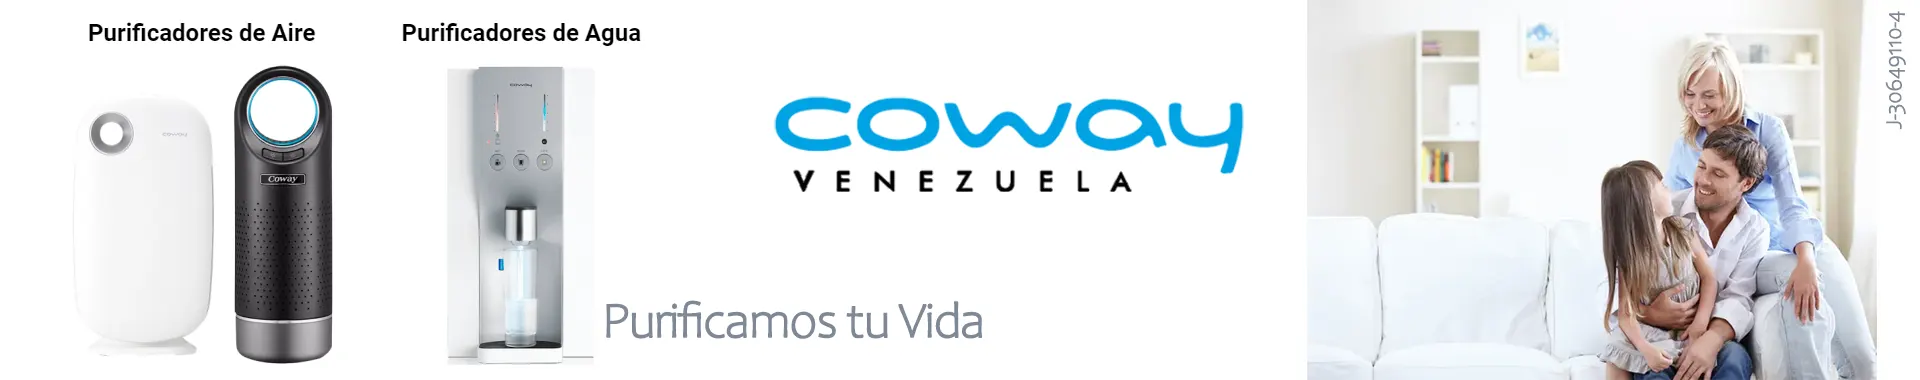 Imagen 1 del perfil de Coway Venezuela